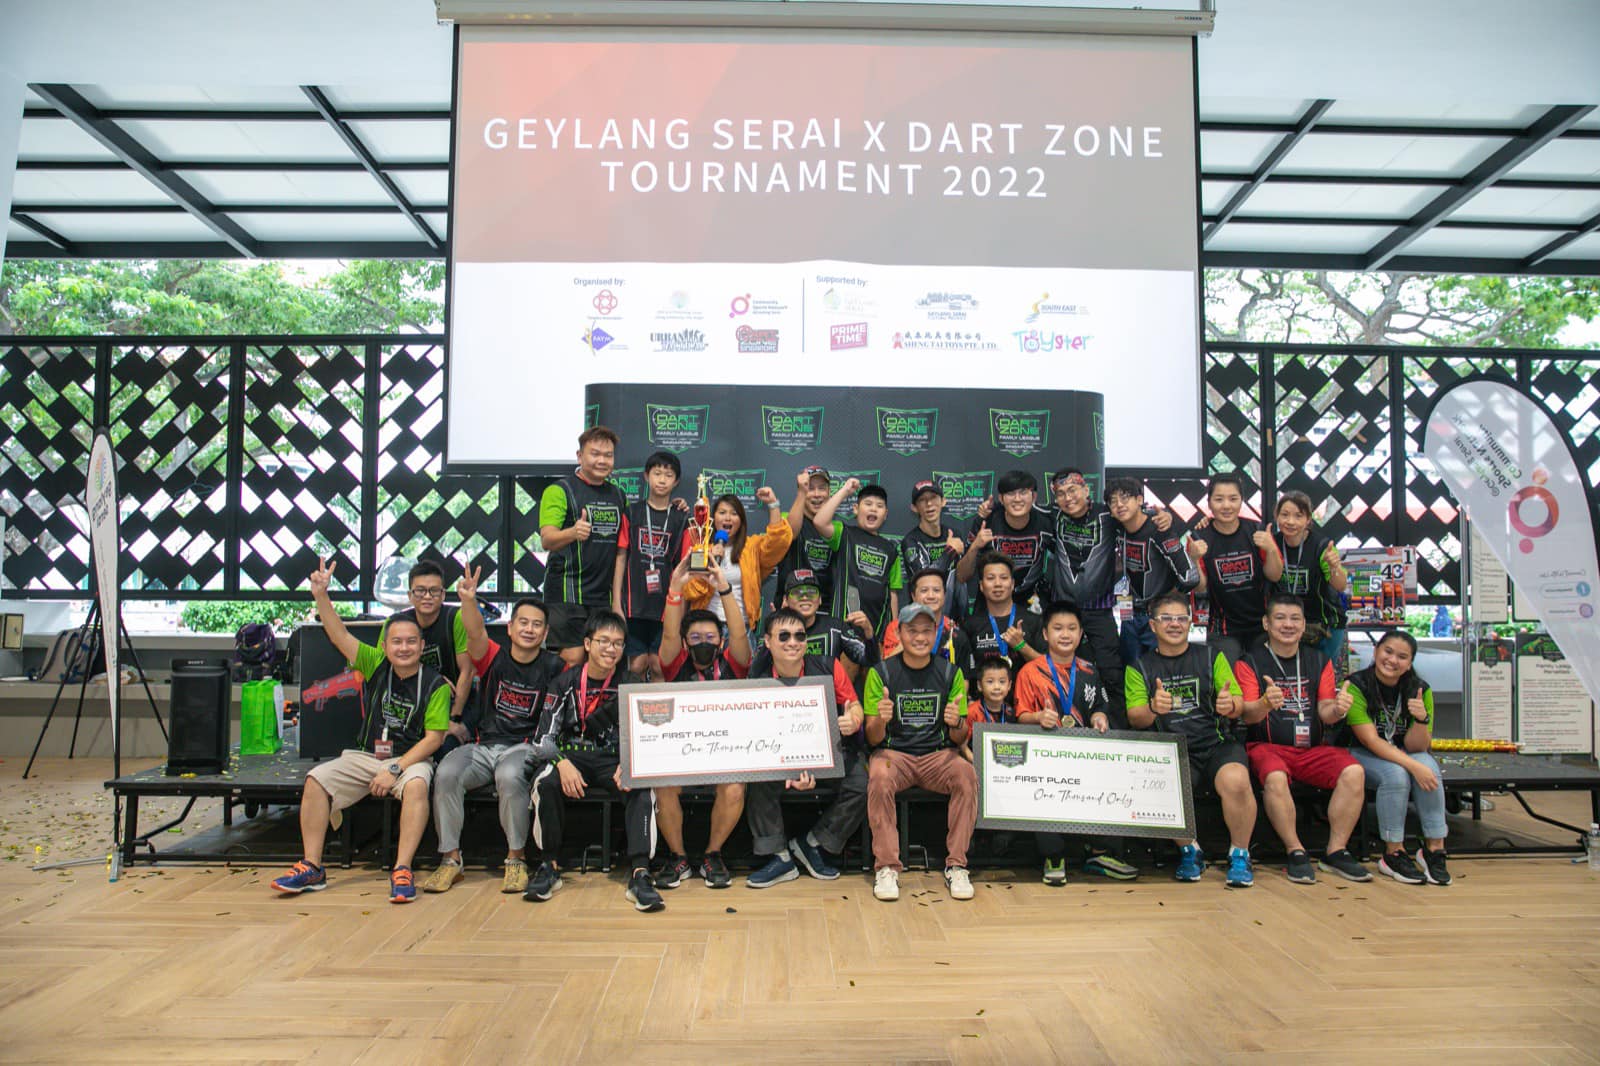 Turnamen Geylang Serai X Dart Zone 2022